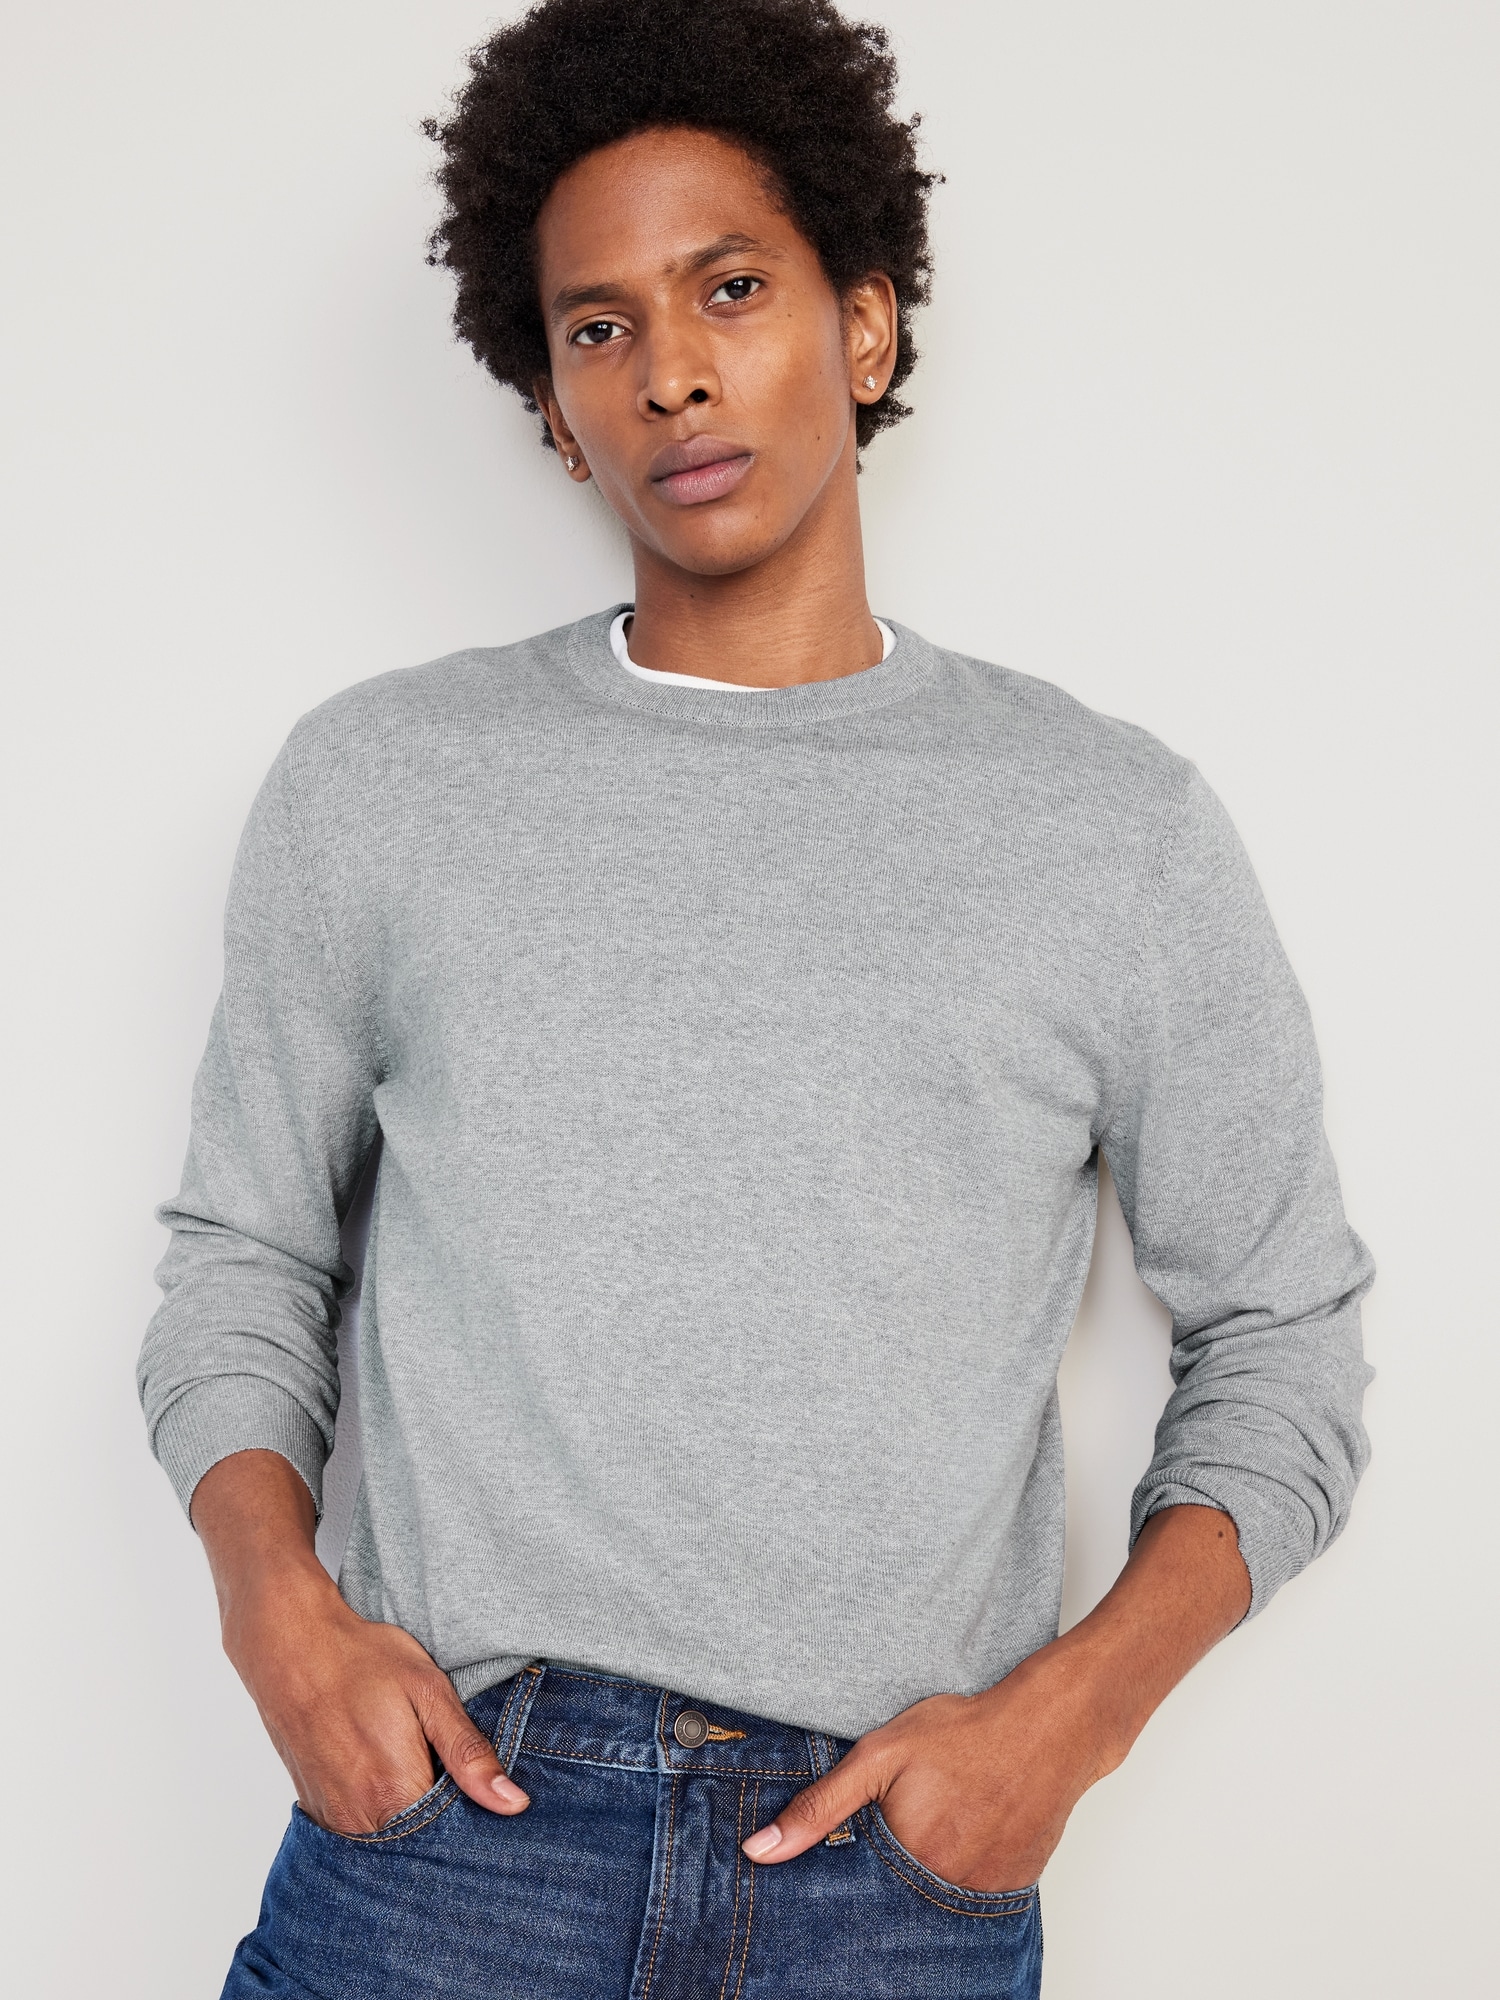 Men's Round Neck Sweatshirts